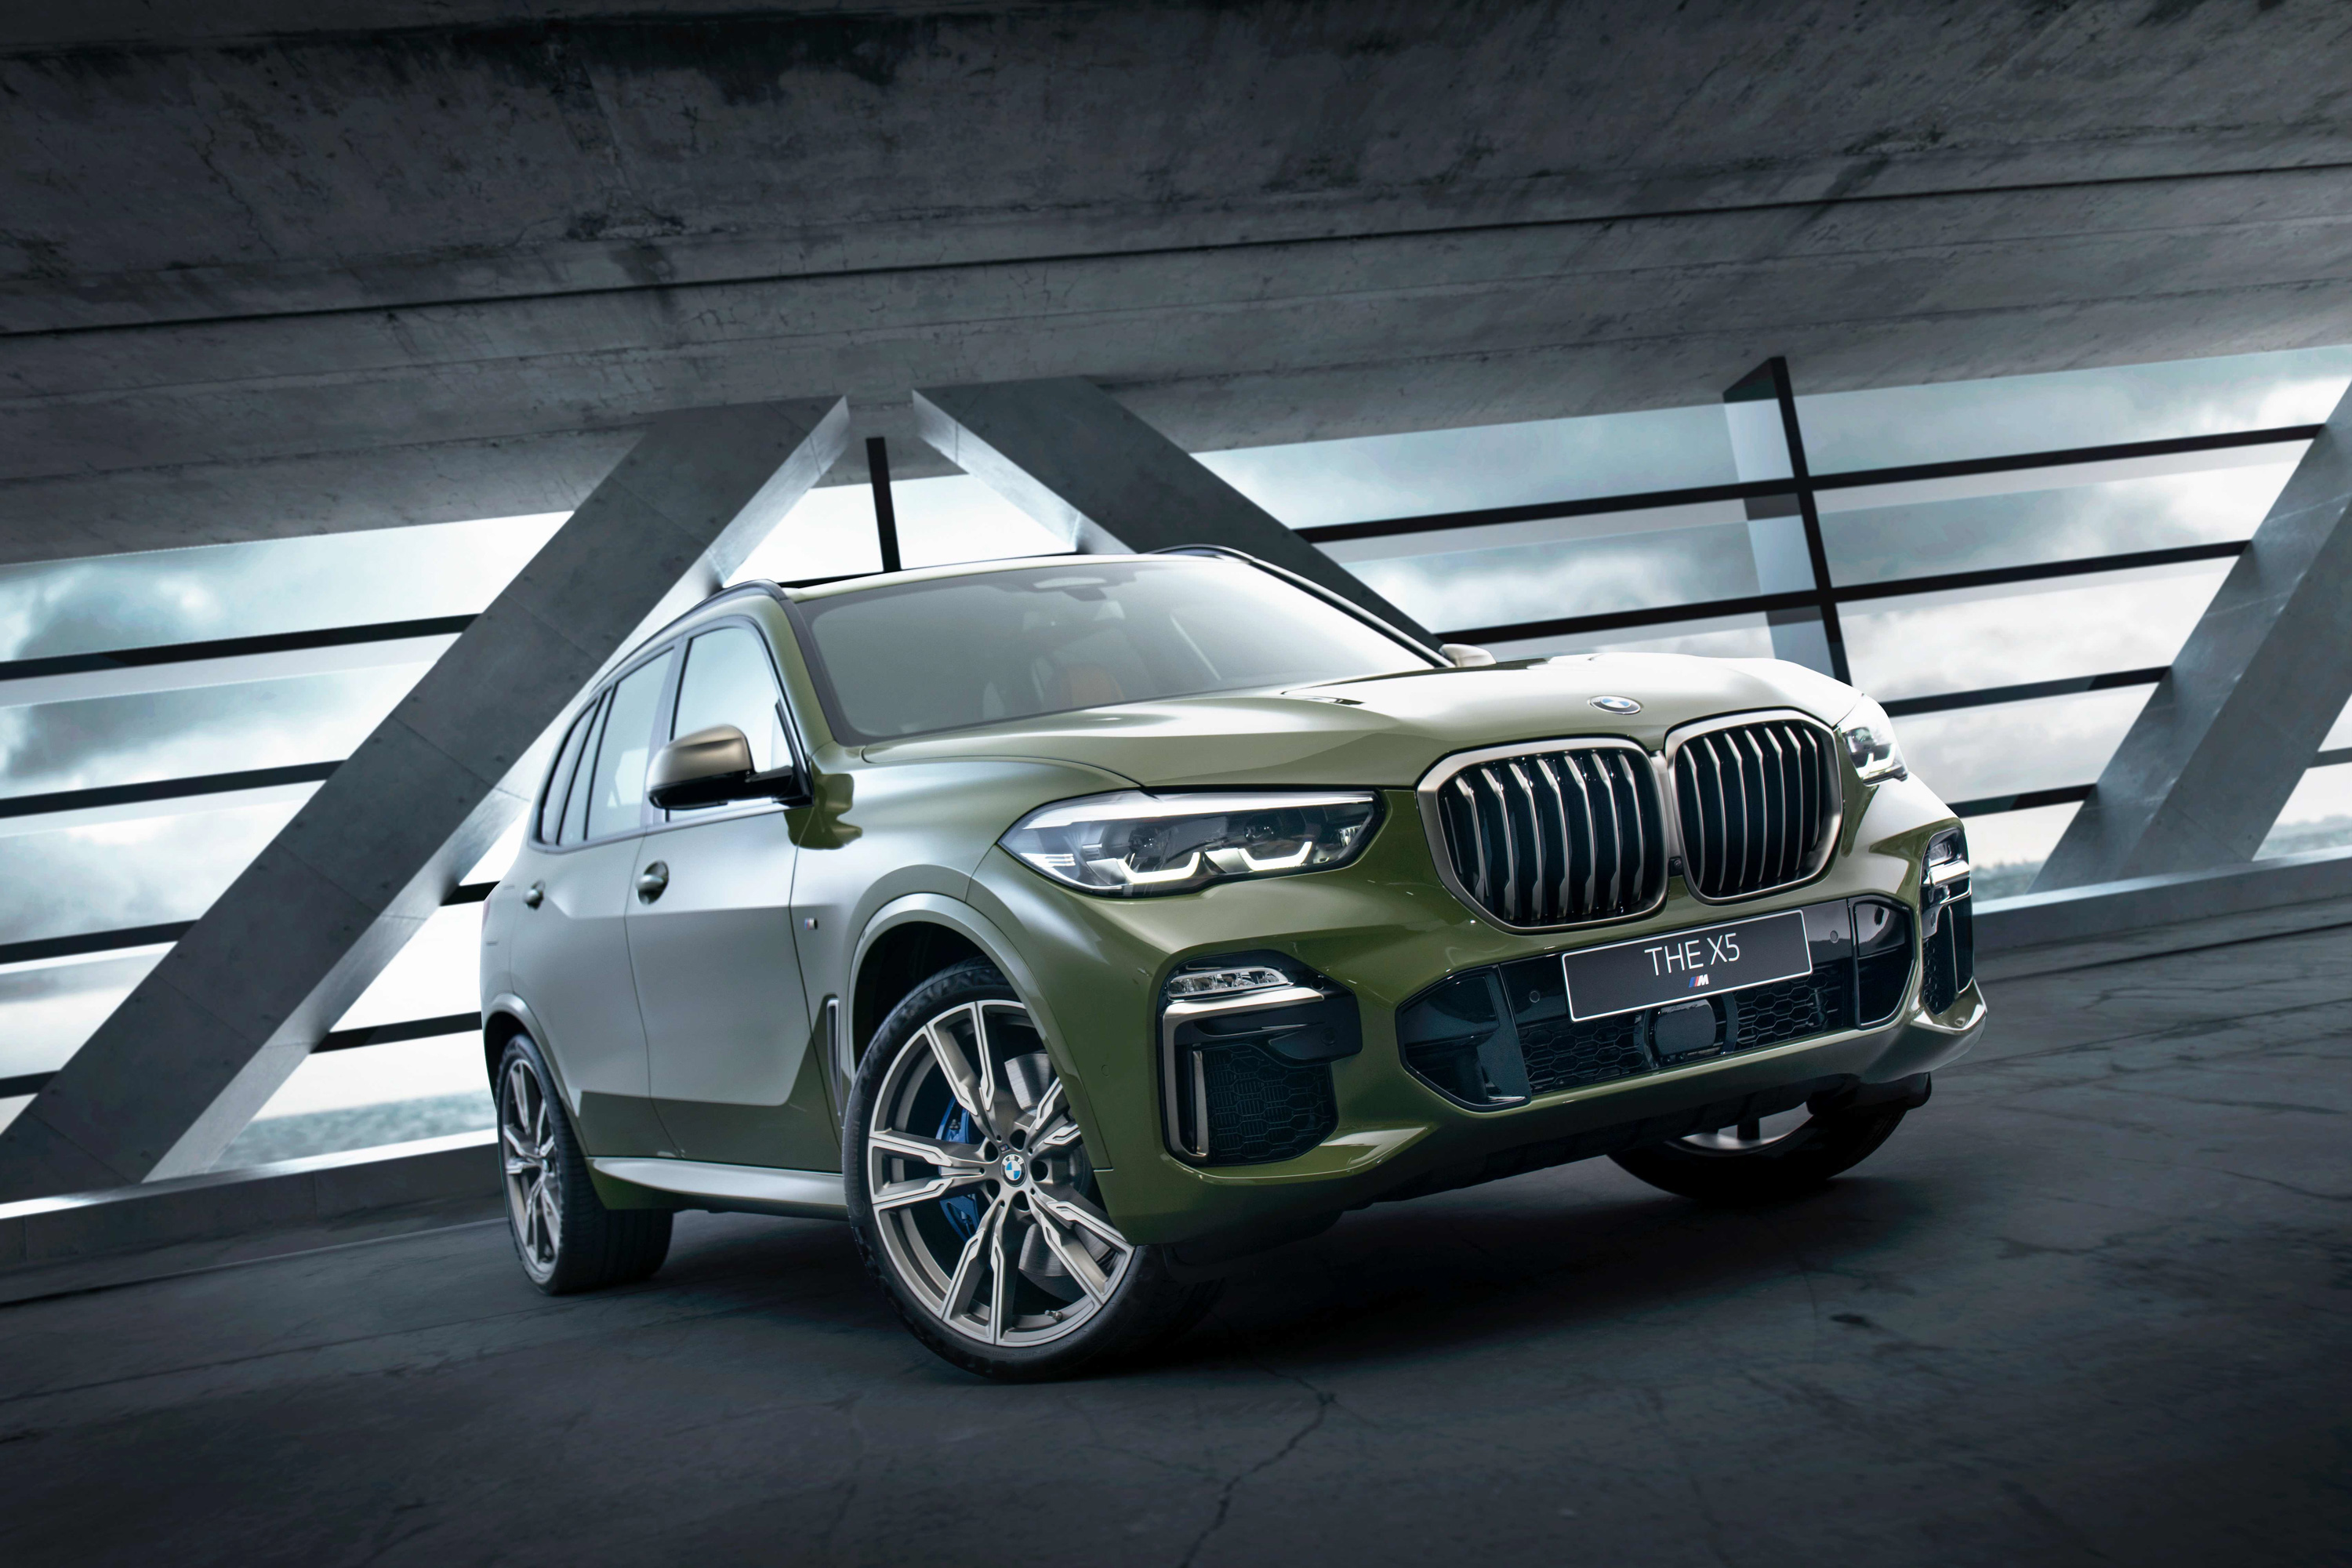 全新 BMW X5 M50i Individual Edition 外觀搭配 Urban Green 特殊車色。